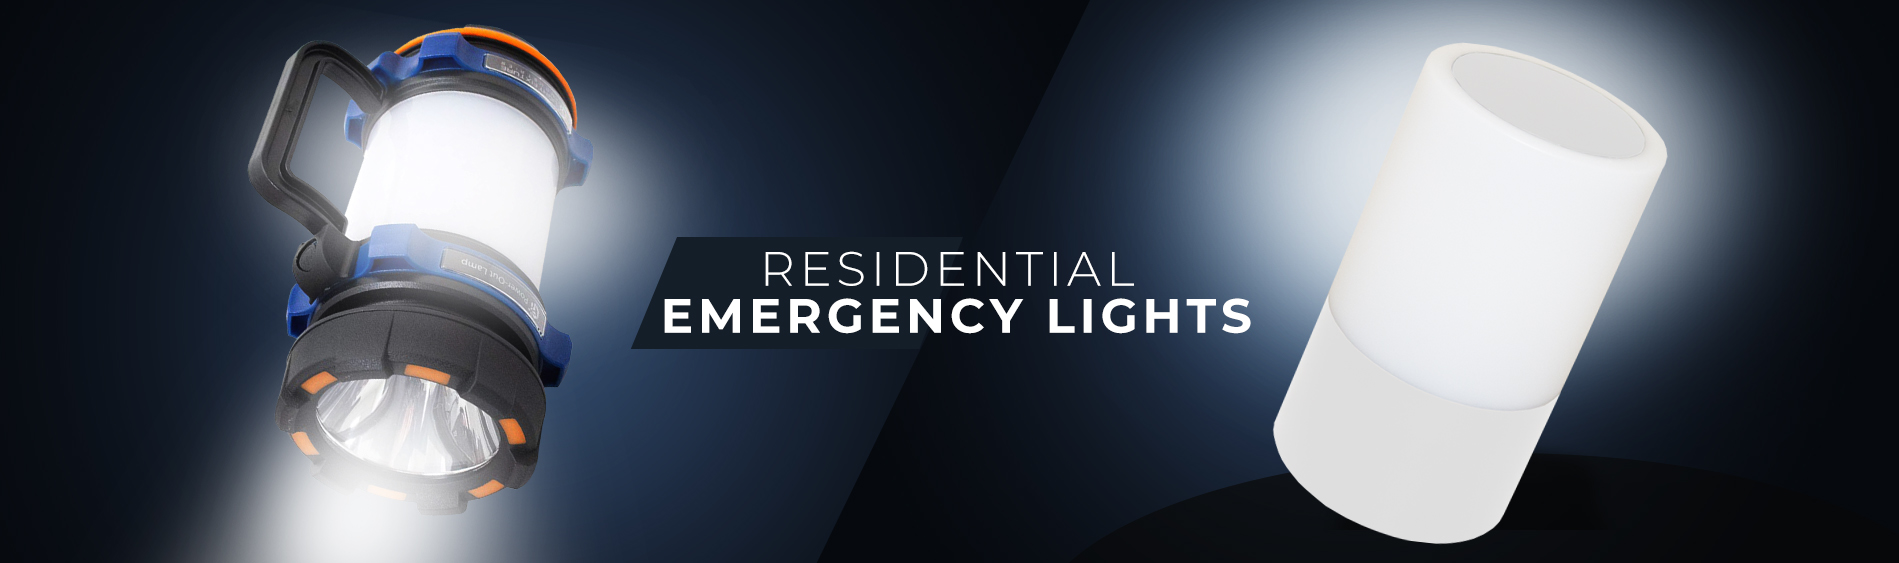 best led emergency lights  Led emergency lights, Emergency lighting, Battery  powered led